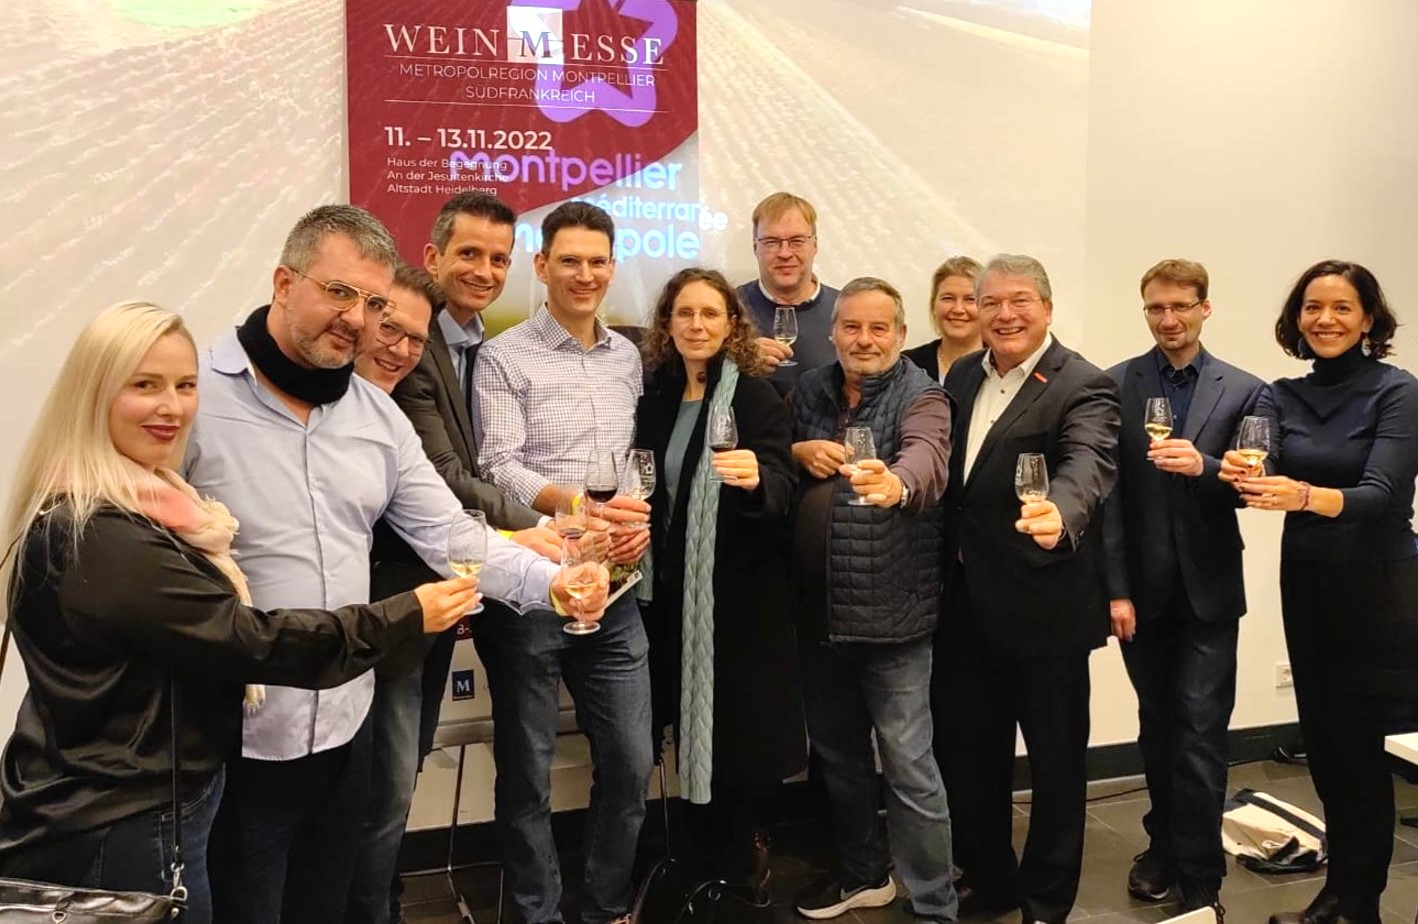 Des entrepreneurs allemands à la Foire des vins de Montpellier à Heidelberg